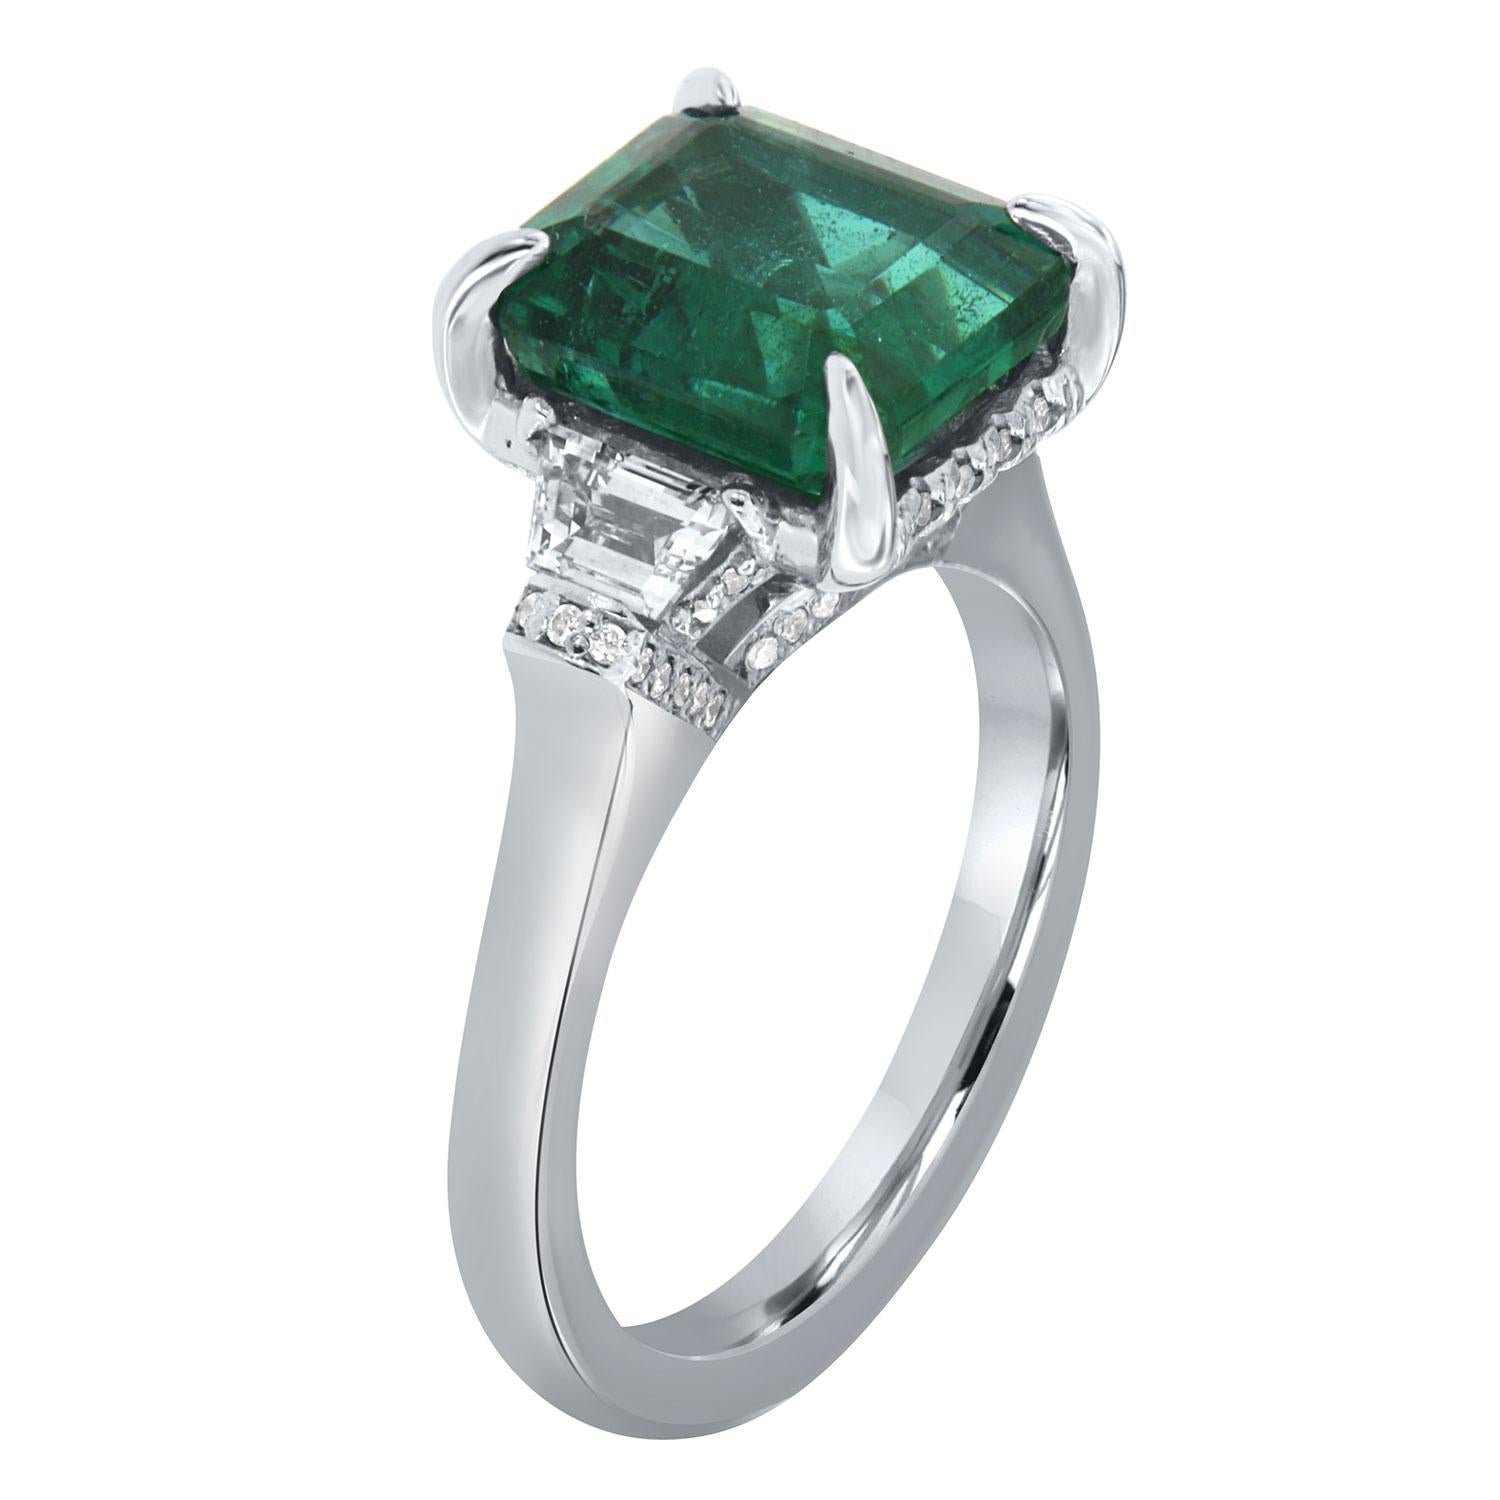 Dieser handgefertigte, atemberaubende Ring hat 3,87 Karat  Lebendiger grüner Smaragd aus Sambia, GIA-zertifiziert, umgeben von einem  versteckter Halo aus zarten Diamanten in Micro-Prong-Fassung. Der Smaragd wird von zwei perfekt aufeinander